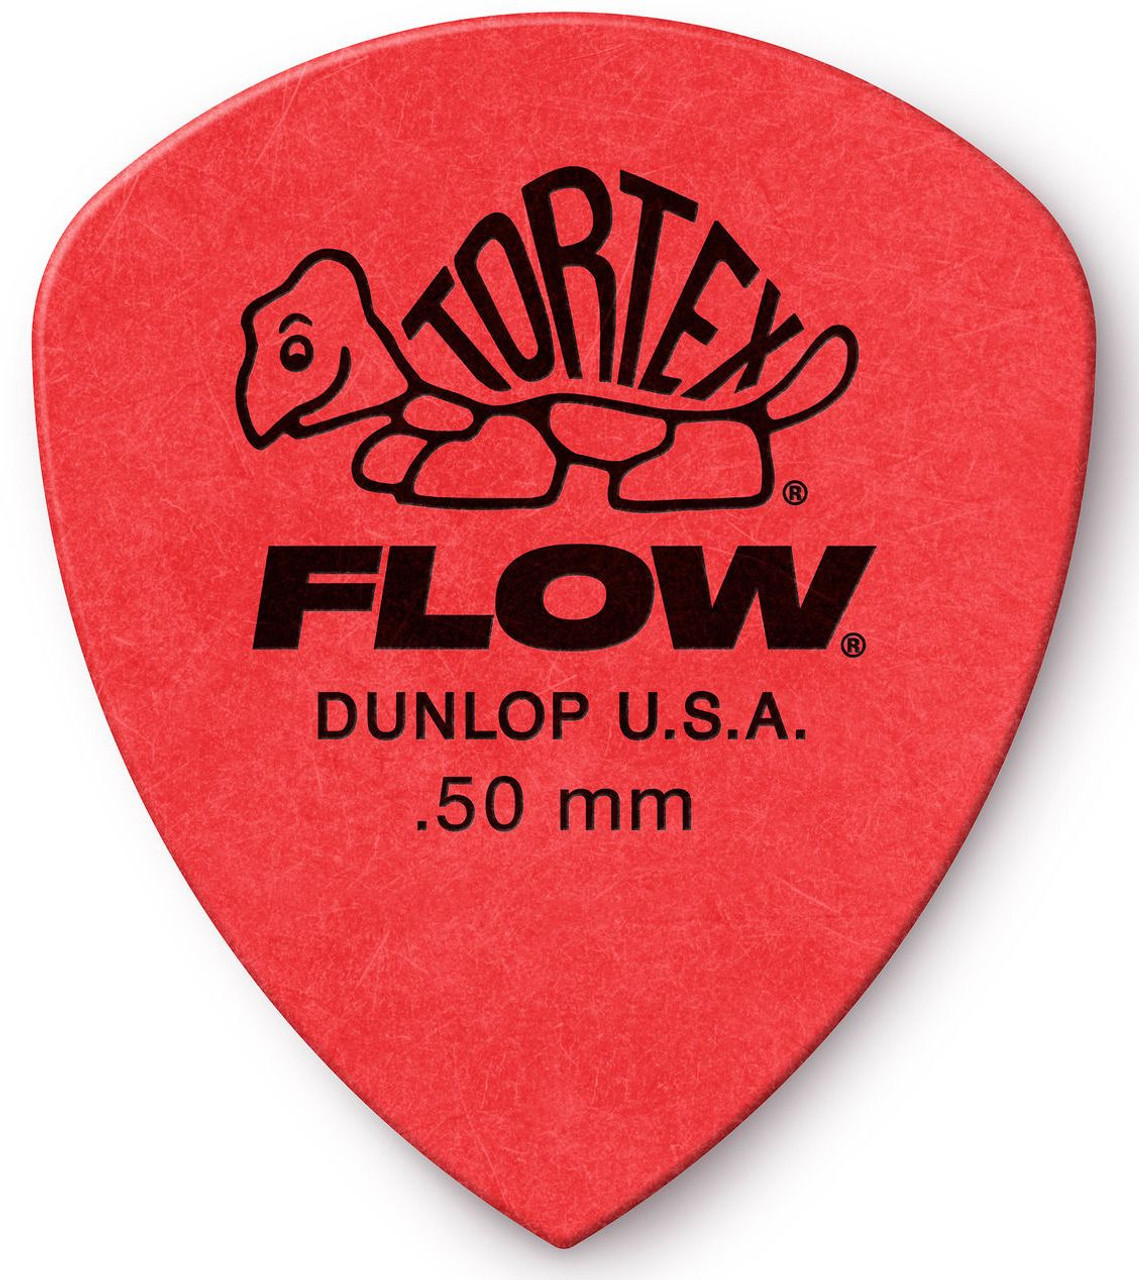 100 Pcs Dunlop Guitar Picks Electric Guitar Pick Part Accessories